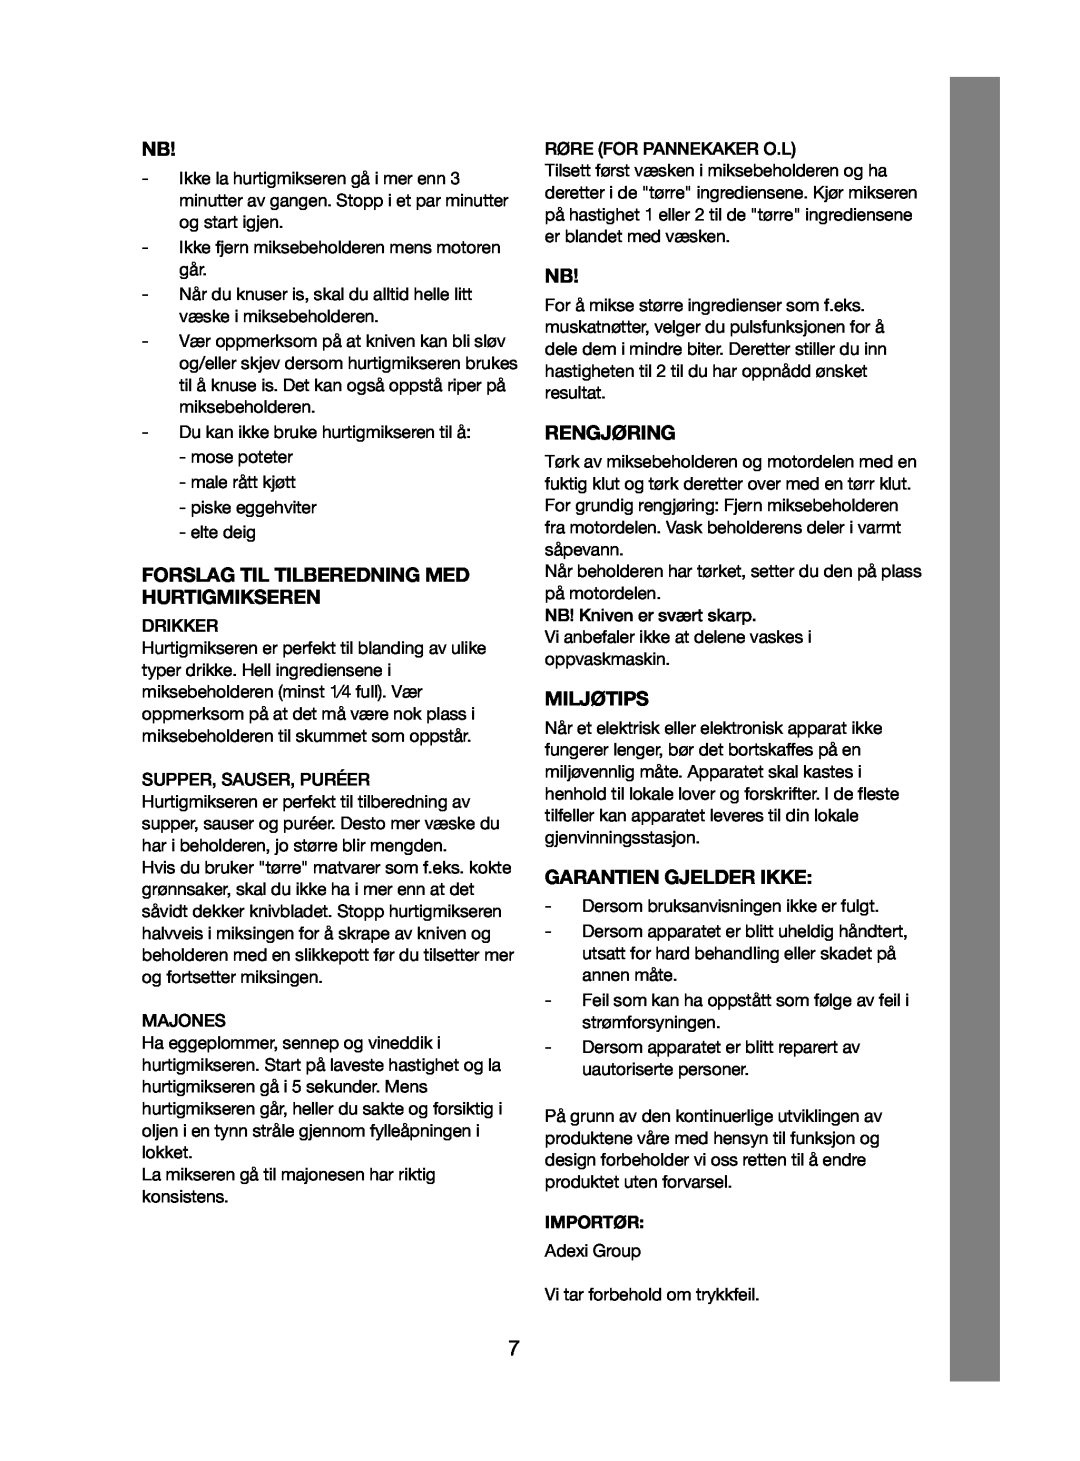 Melissa 246-015 manual Forslag Til Tilberedning Med Hurtigmikseren, Rengjøring, Miljøtips, Garantien Gjelder Ikke 